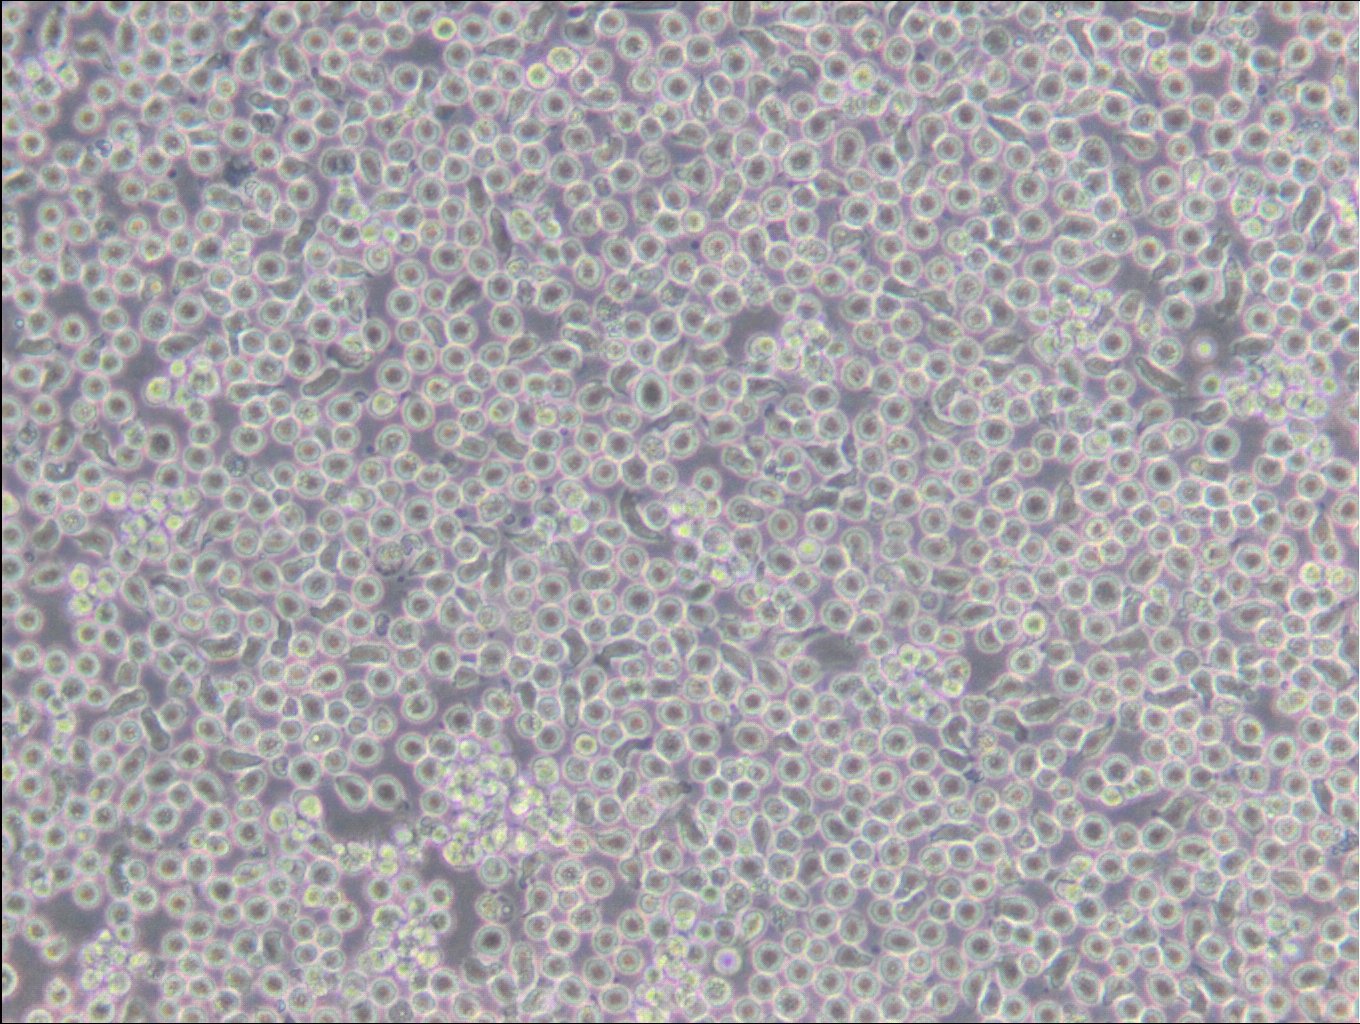 6T-CEM Cells